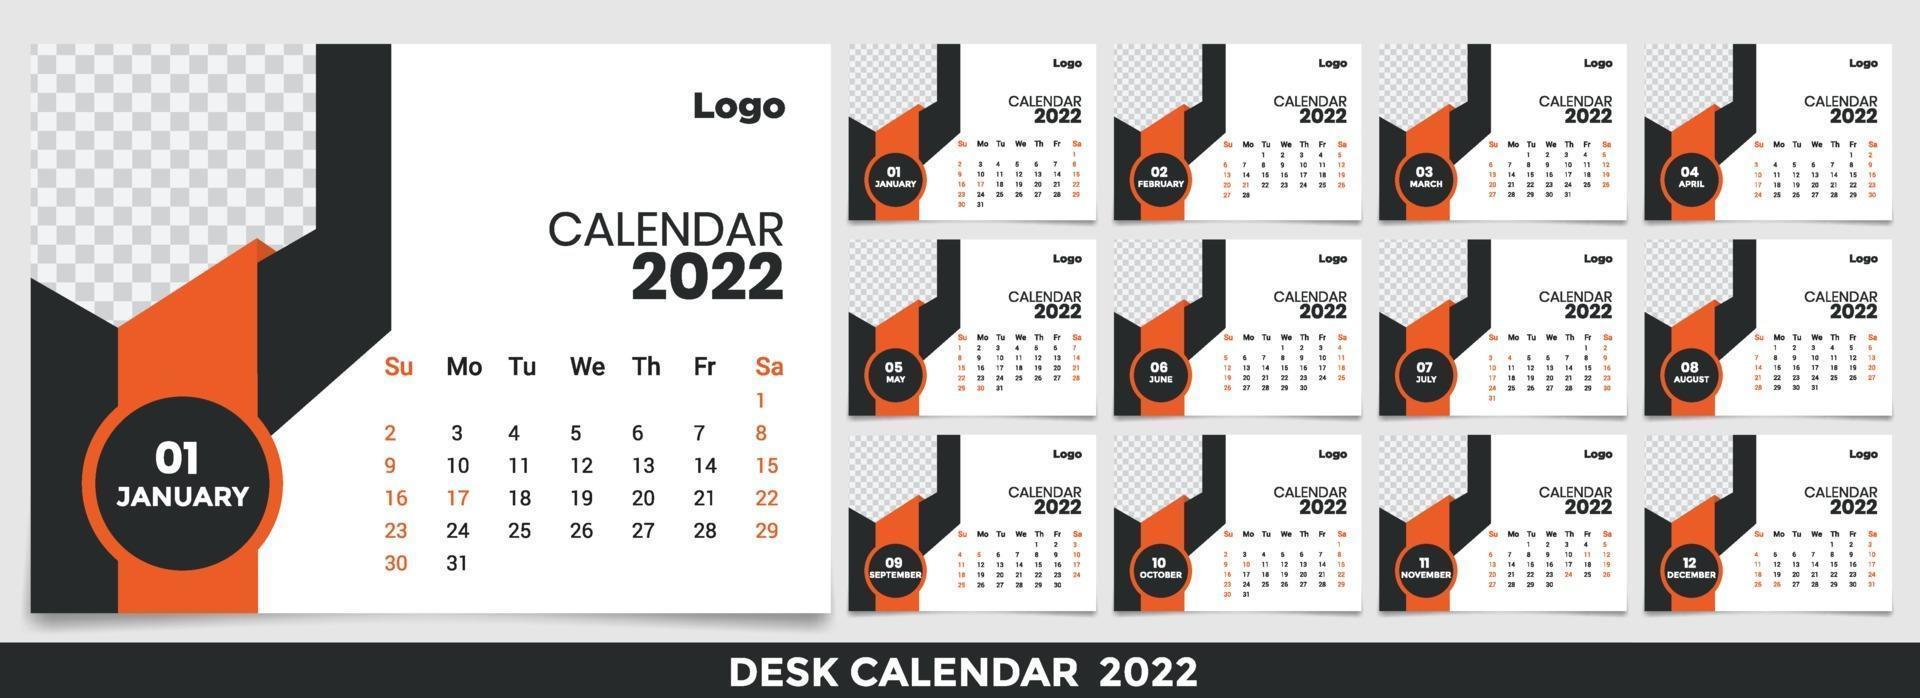 calendario 2022, establezca el diseño de la plantilla de calendario de escritorio con lugar para la foto y el logotipo de la empresa. la semana del lunes al domingo. conjunto de 12 meses vector